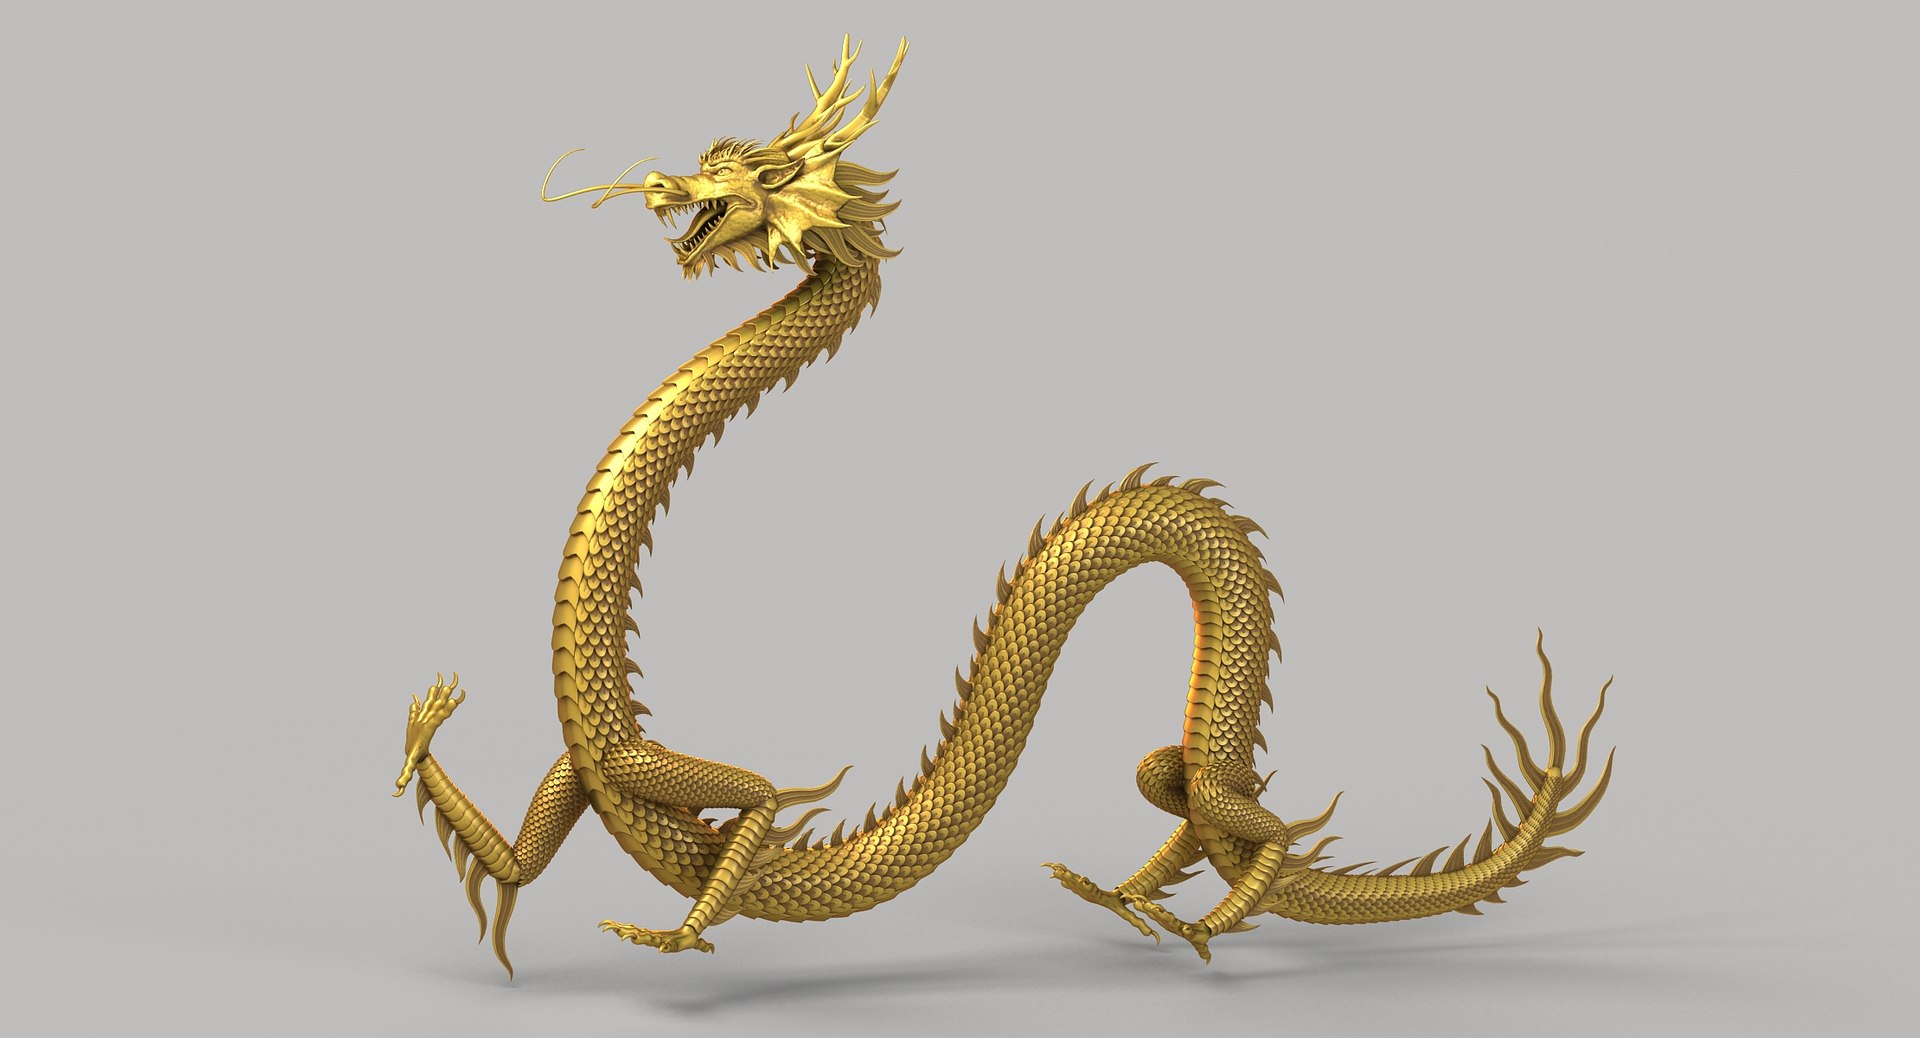 Sale dragon. Японский золотой дракон 3д. Китайский дракон. Китайский дракон 3д. Голова китайского дракона.